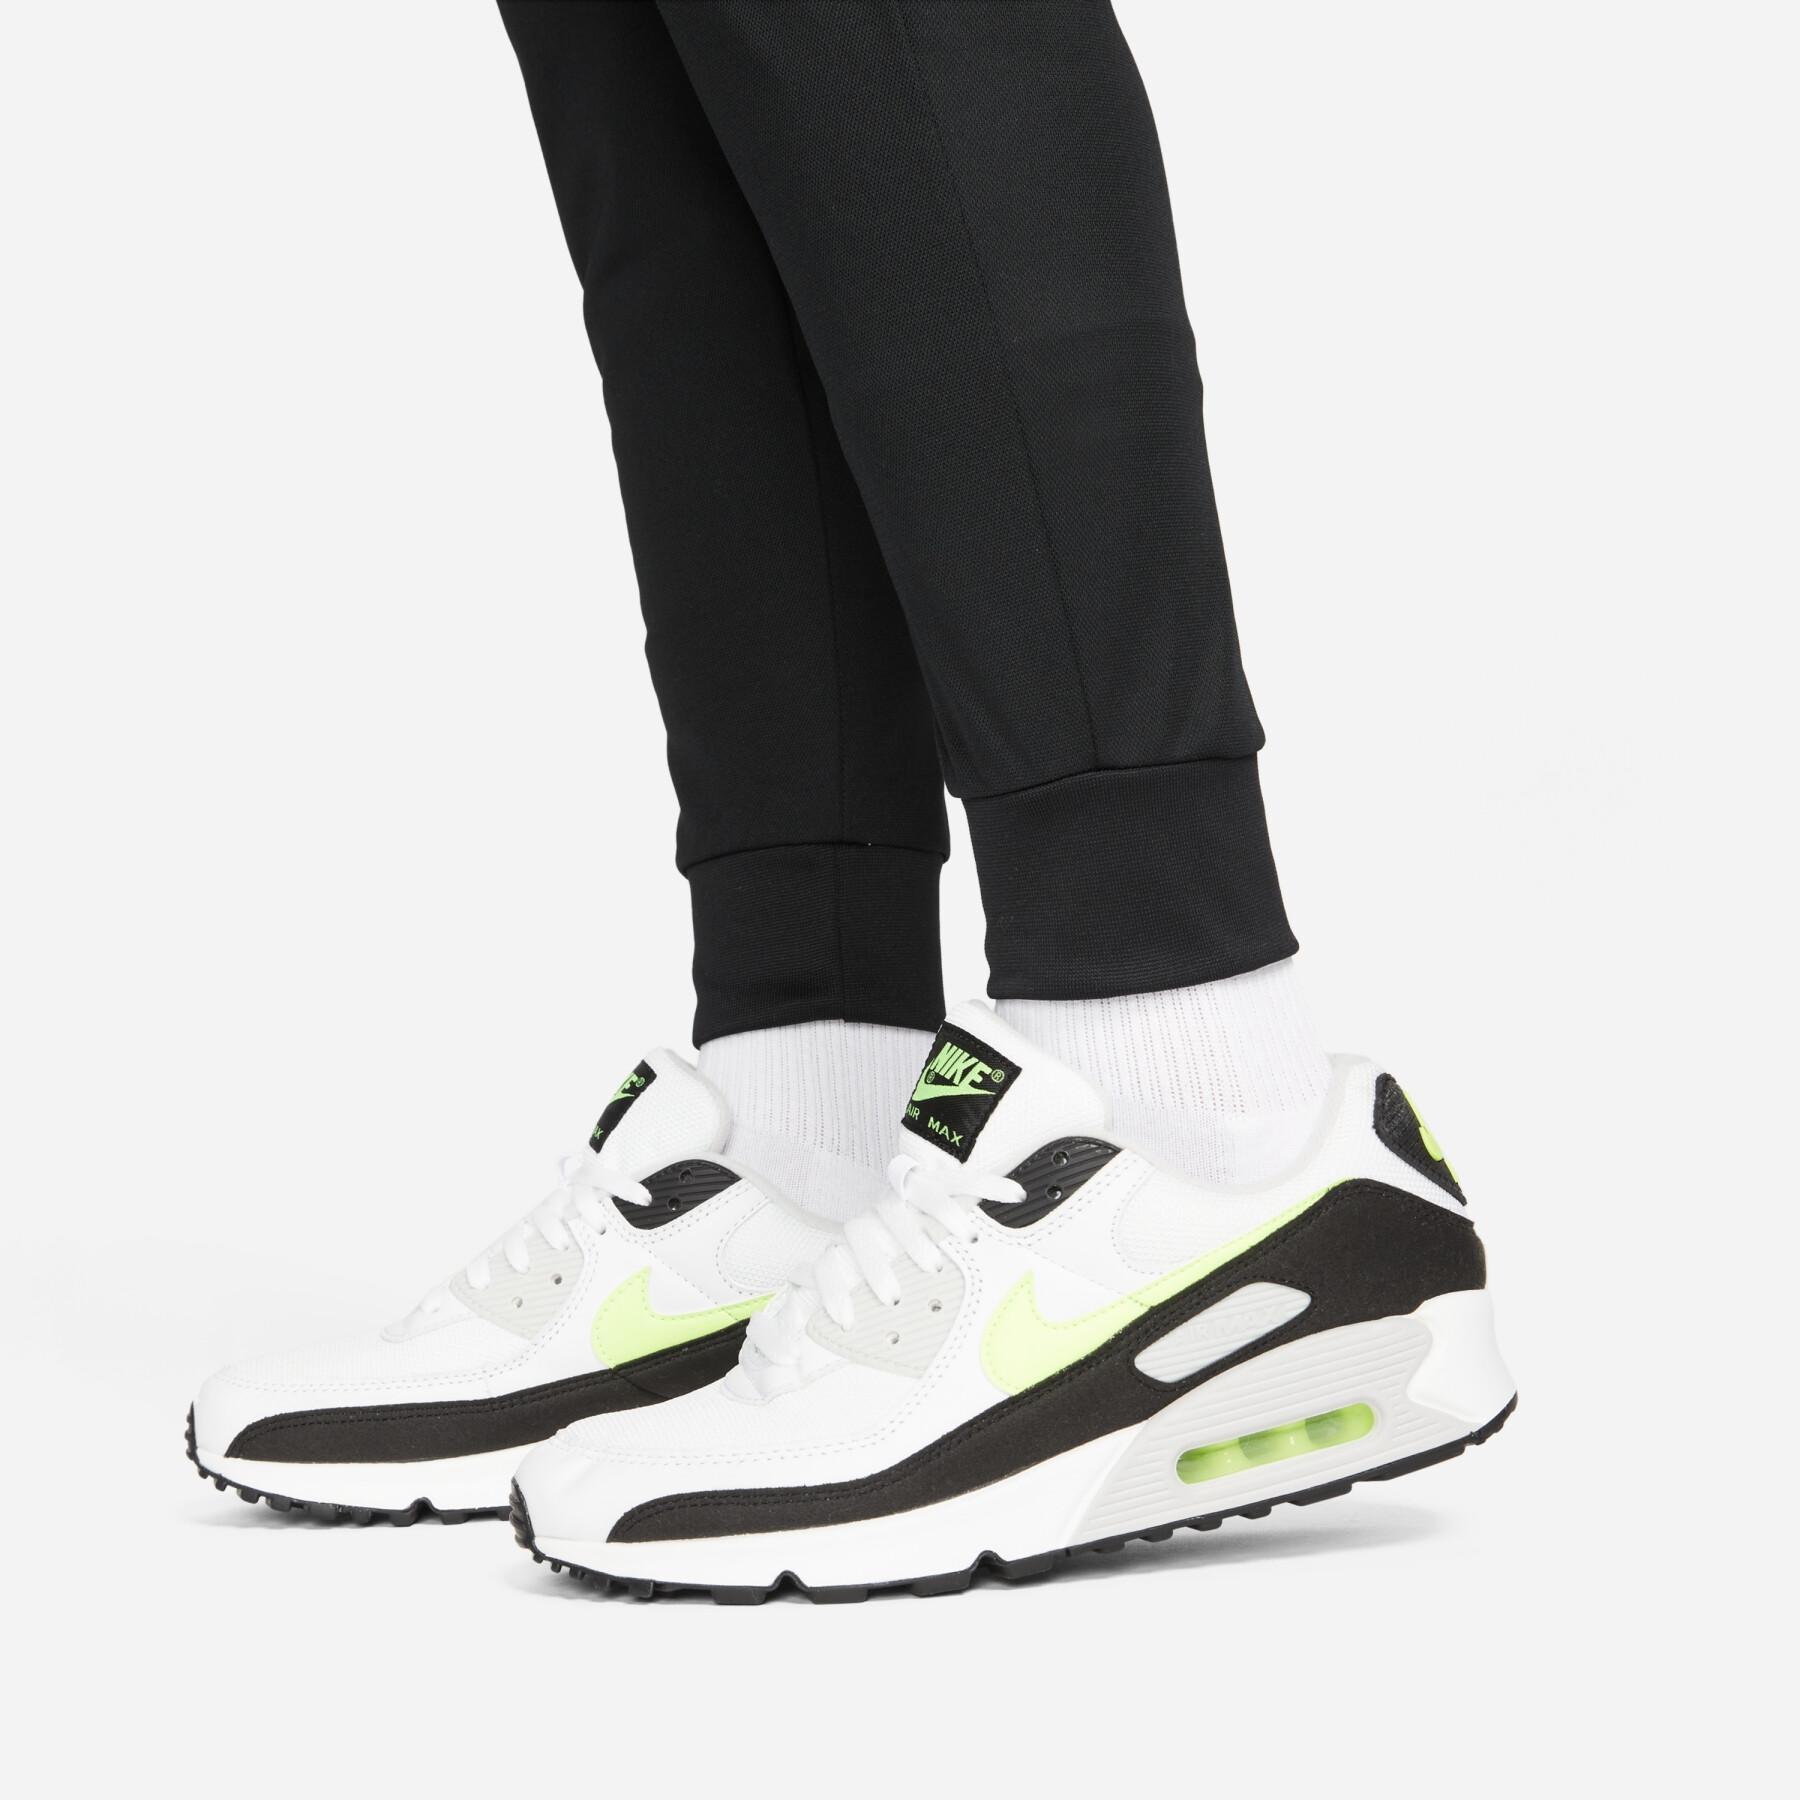 Spodnie Nike F.C. Dri-Fit